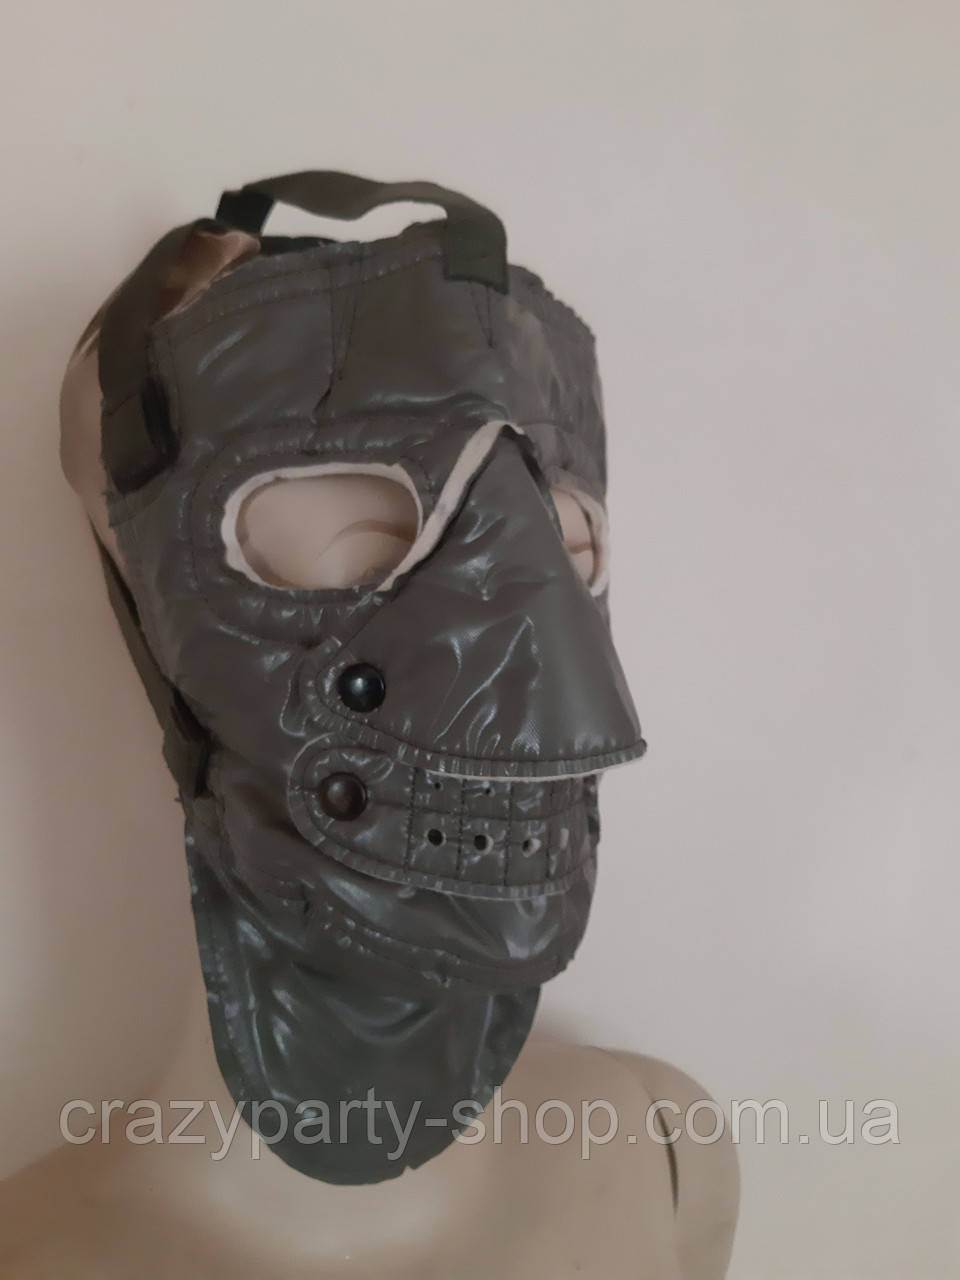 Карнавальна маска Ганнібала Лектора